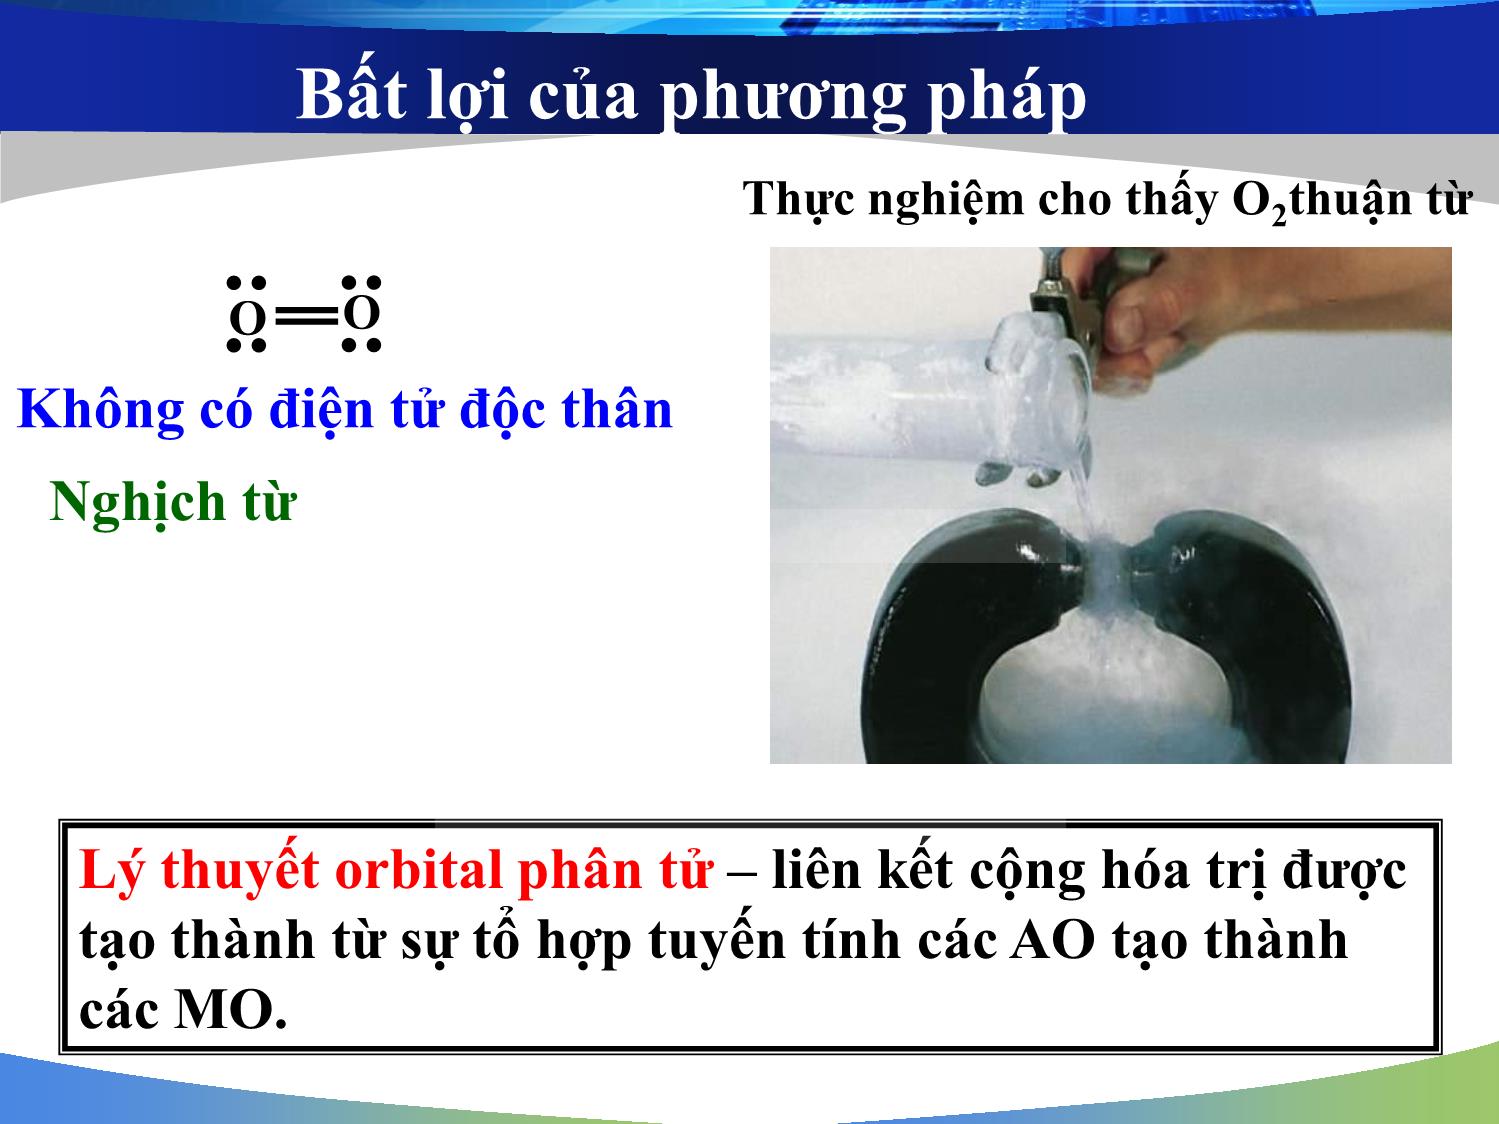 Bài giảng môn Hóa đại cương: Phương pháp orbital phân tử (Molecular Orbital - MO) - Nguyễn Minh Kha trang 3